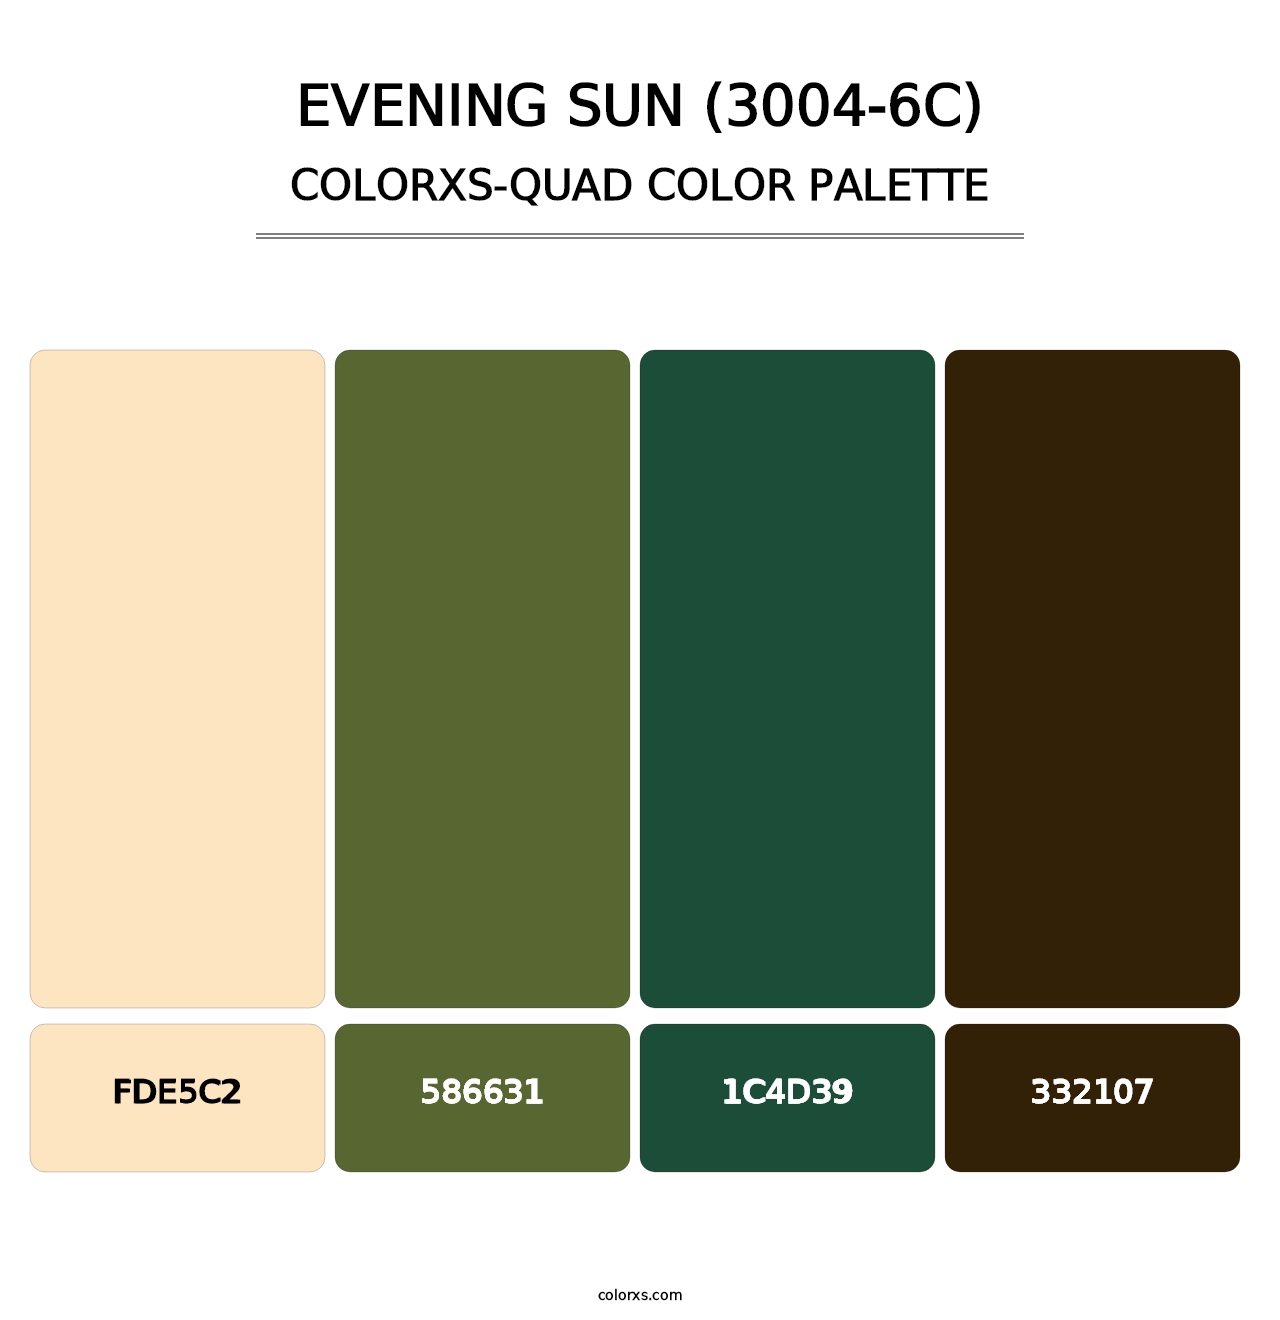 Evening Sun (3004-6C) - Colorxs Quad Palette